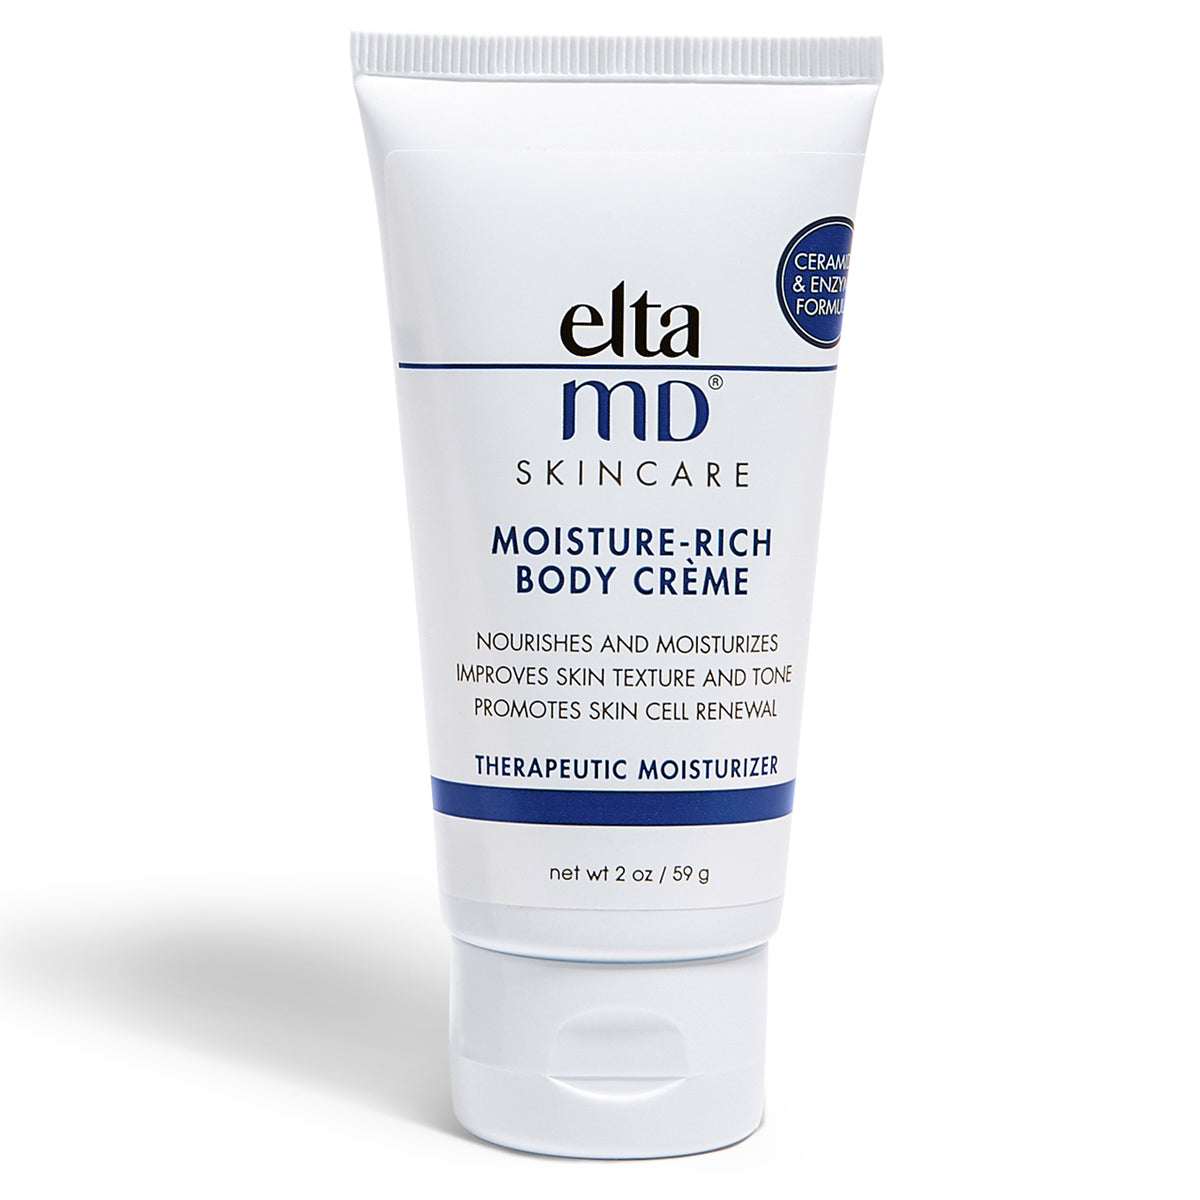 EltaMD Moisture-Rich Body Crème - Pro Skin Doctor